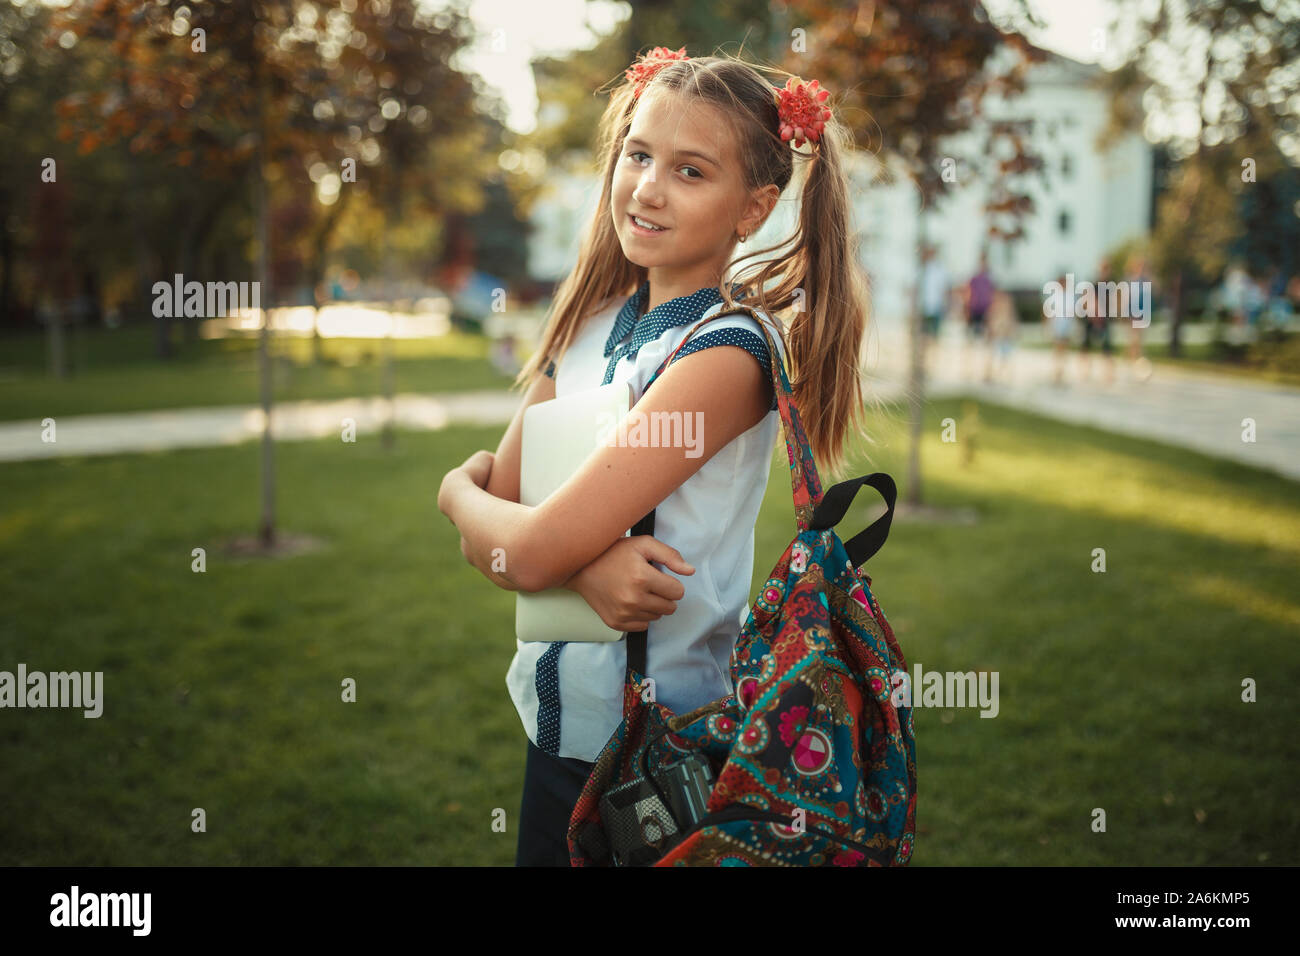 Ein schönes Mädchen im Schulalter steht ein Baum und Halten einer Tablette. Schulmädchen trägt einen Rock und ein T-Shirt mit Schuhen Stockfoto